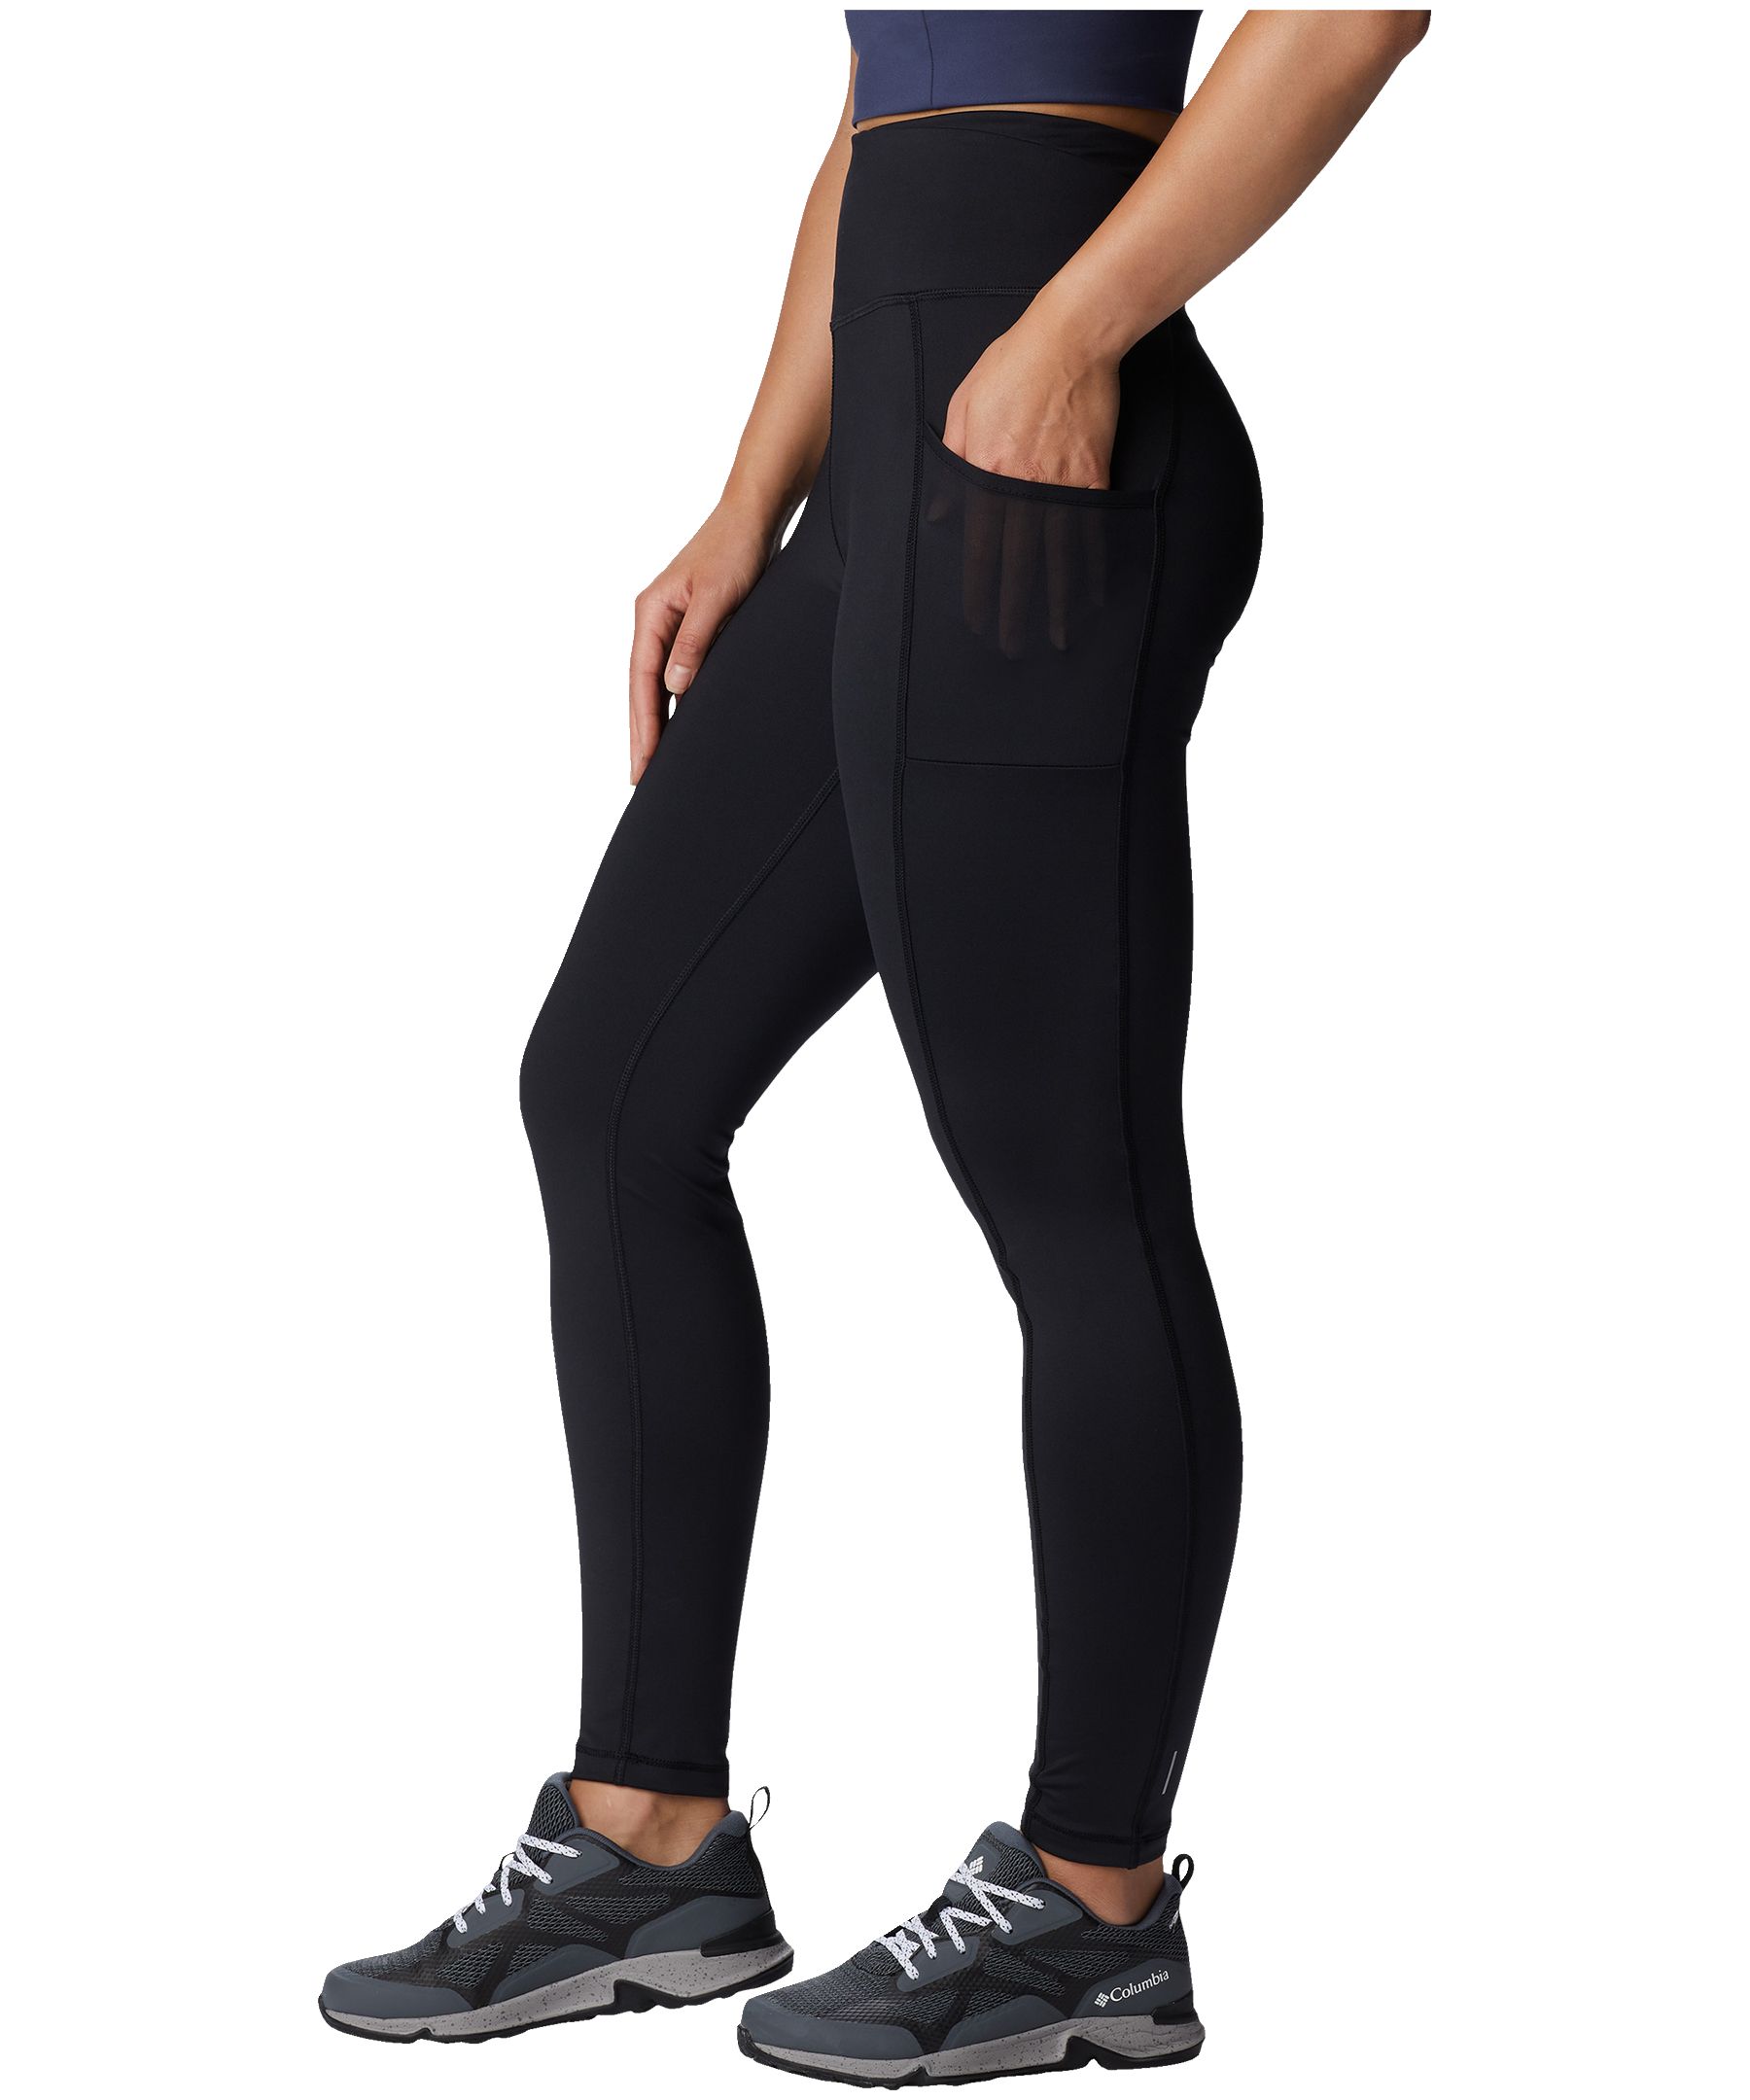 NWT $65 Columbia Omni-Shade UPF Womens Leggings PLUS SIZE PantS BLACK/WHITE  1X